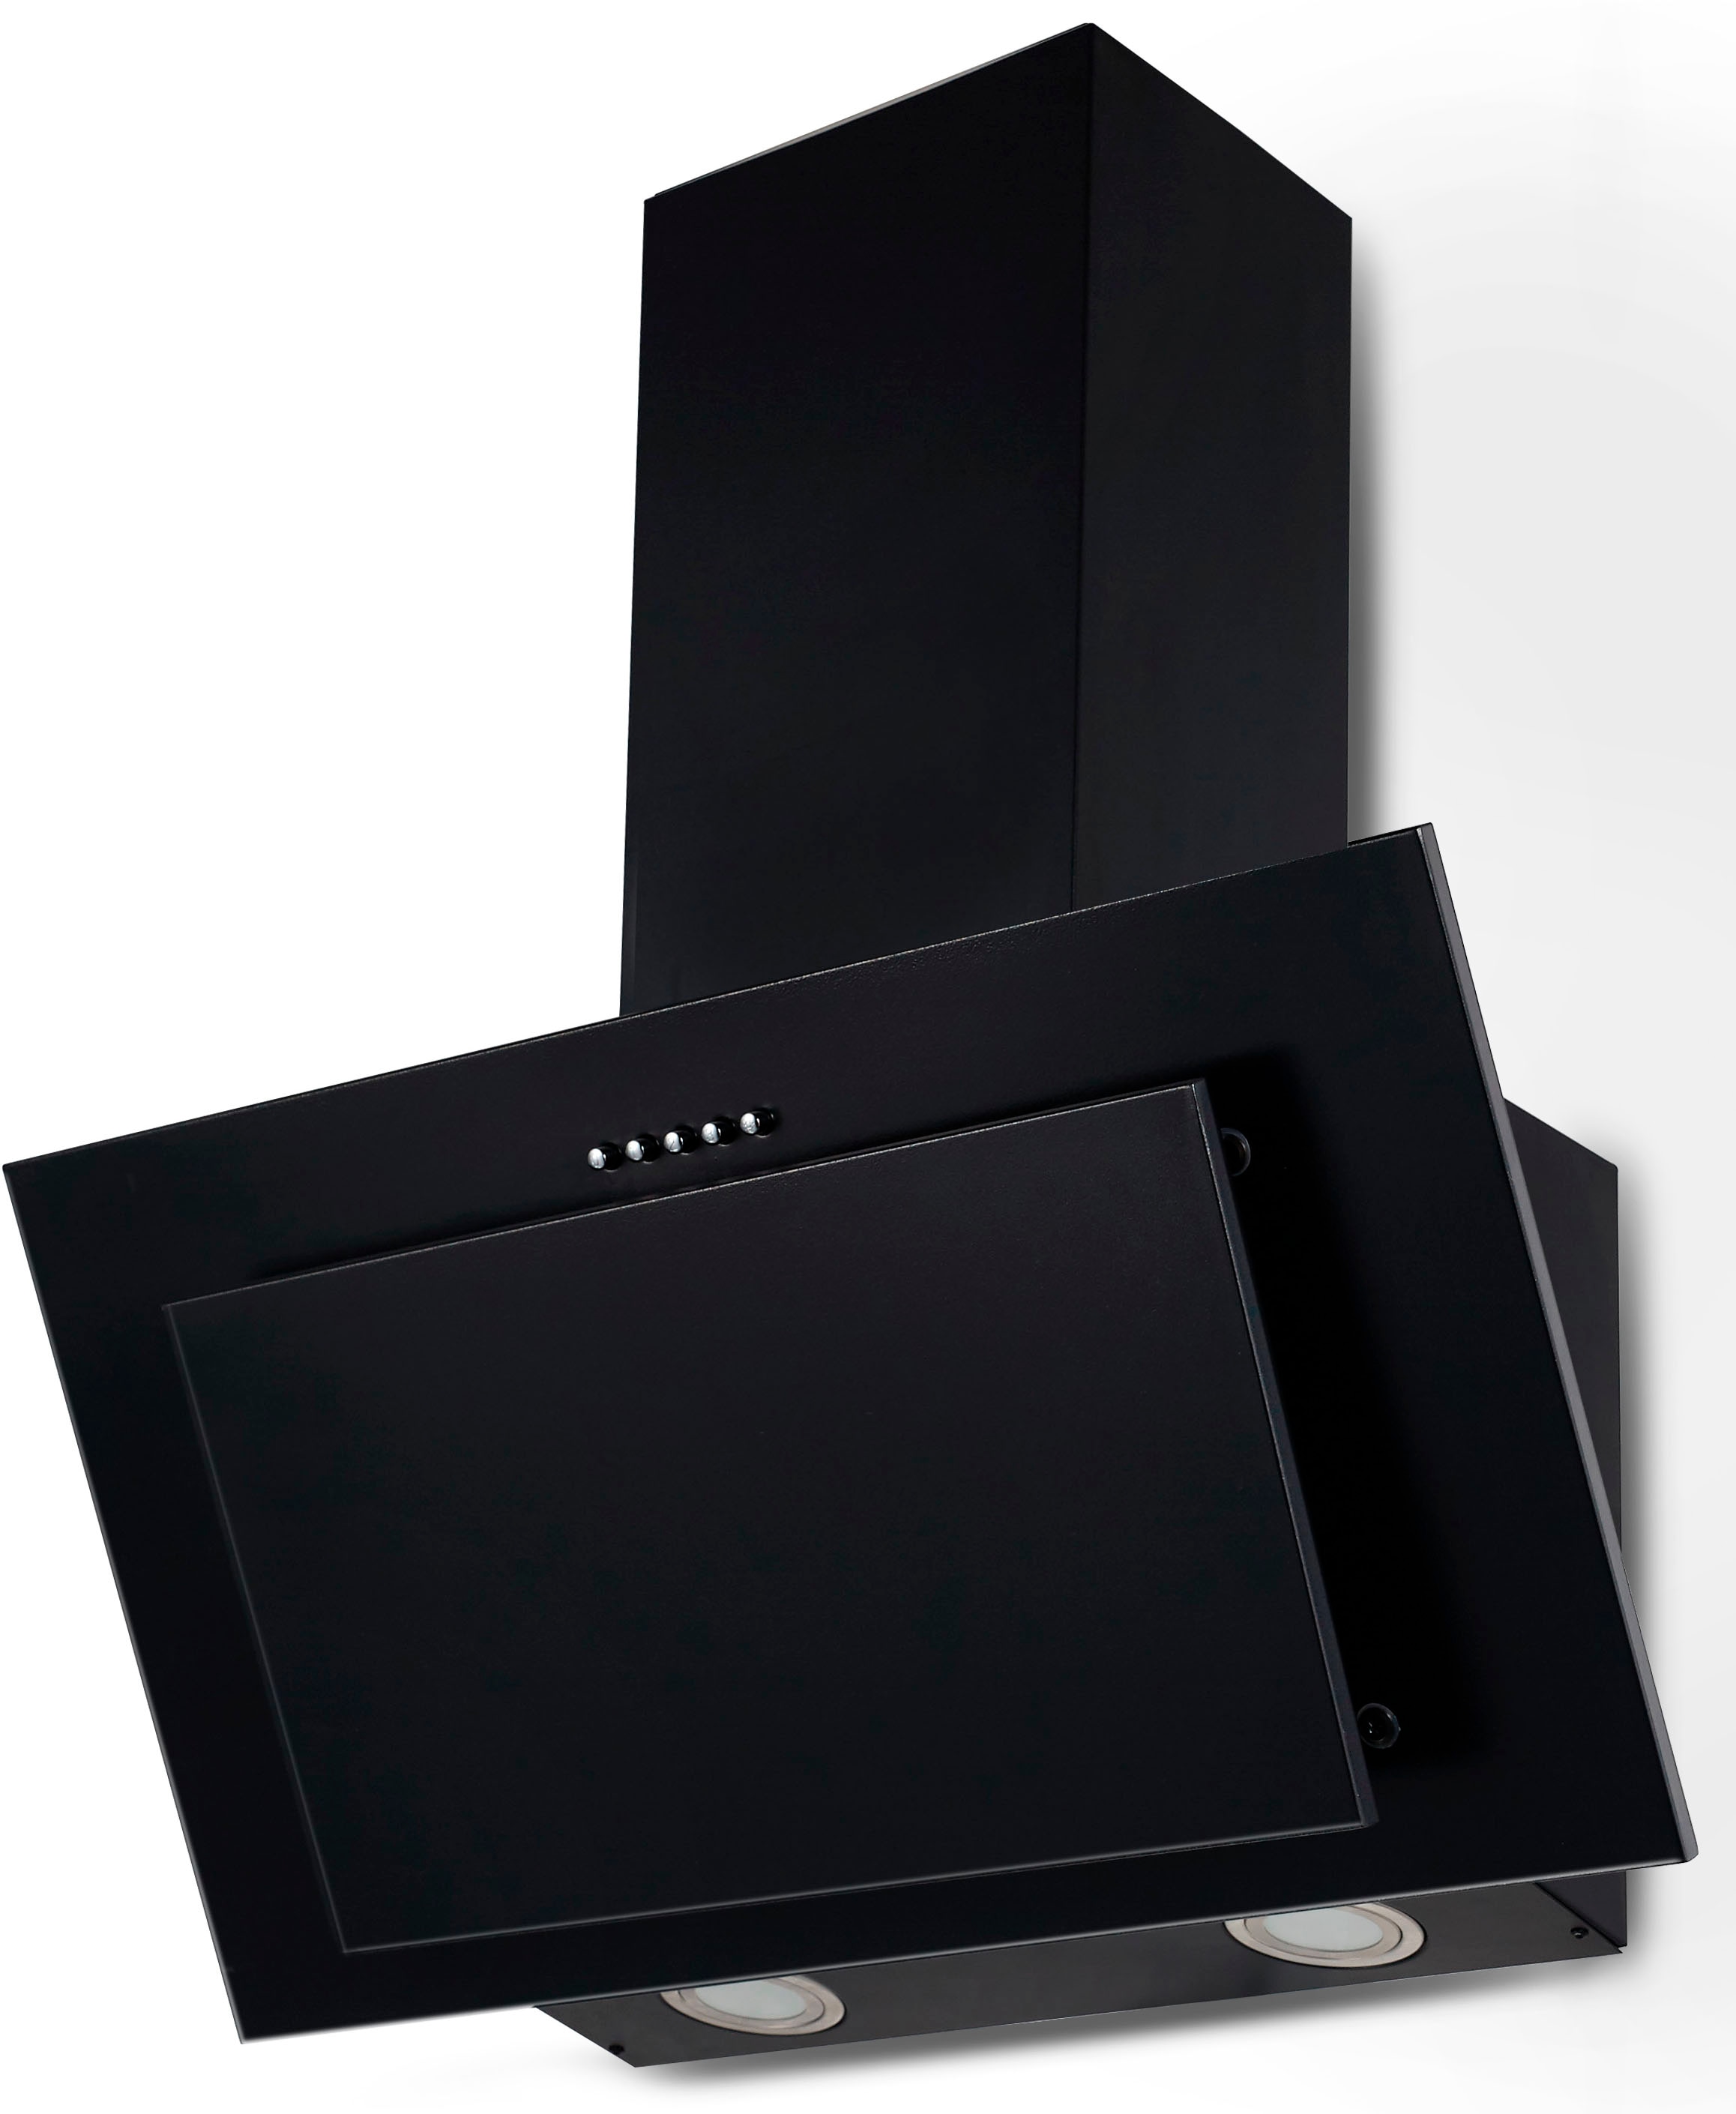 OPTIFIT Küchenzeile »Bern«, mit E-Geräten, Breite 270 cm, höhenverstellbare  Füße, gedämpfte Türen online bei OTTO